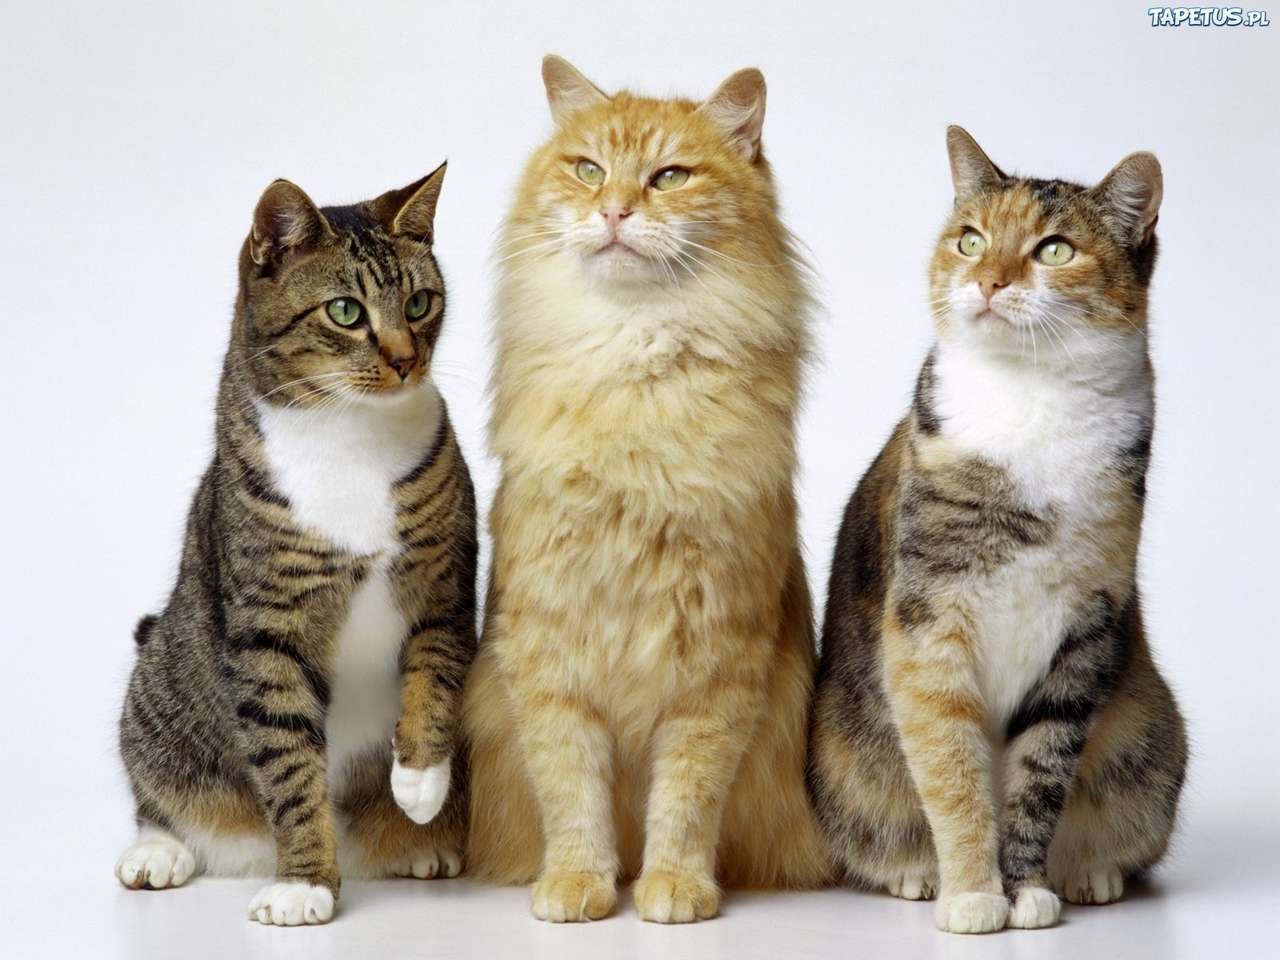 3 kattungar hua pussel på nätet